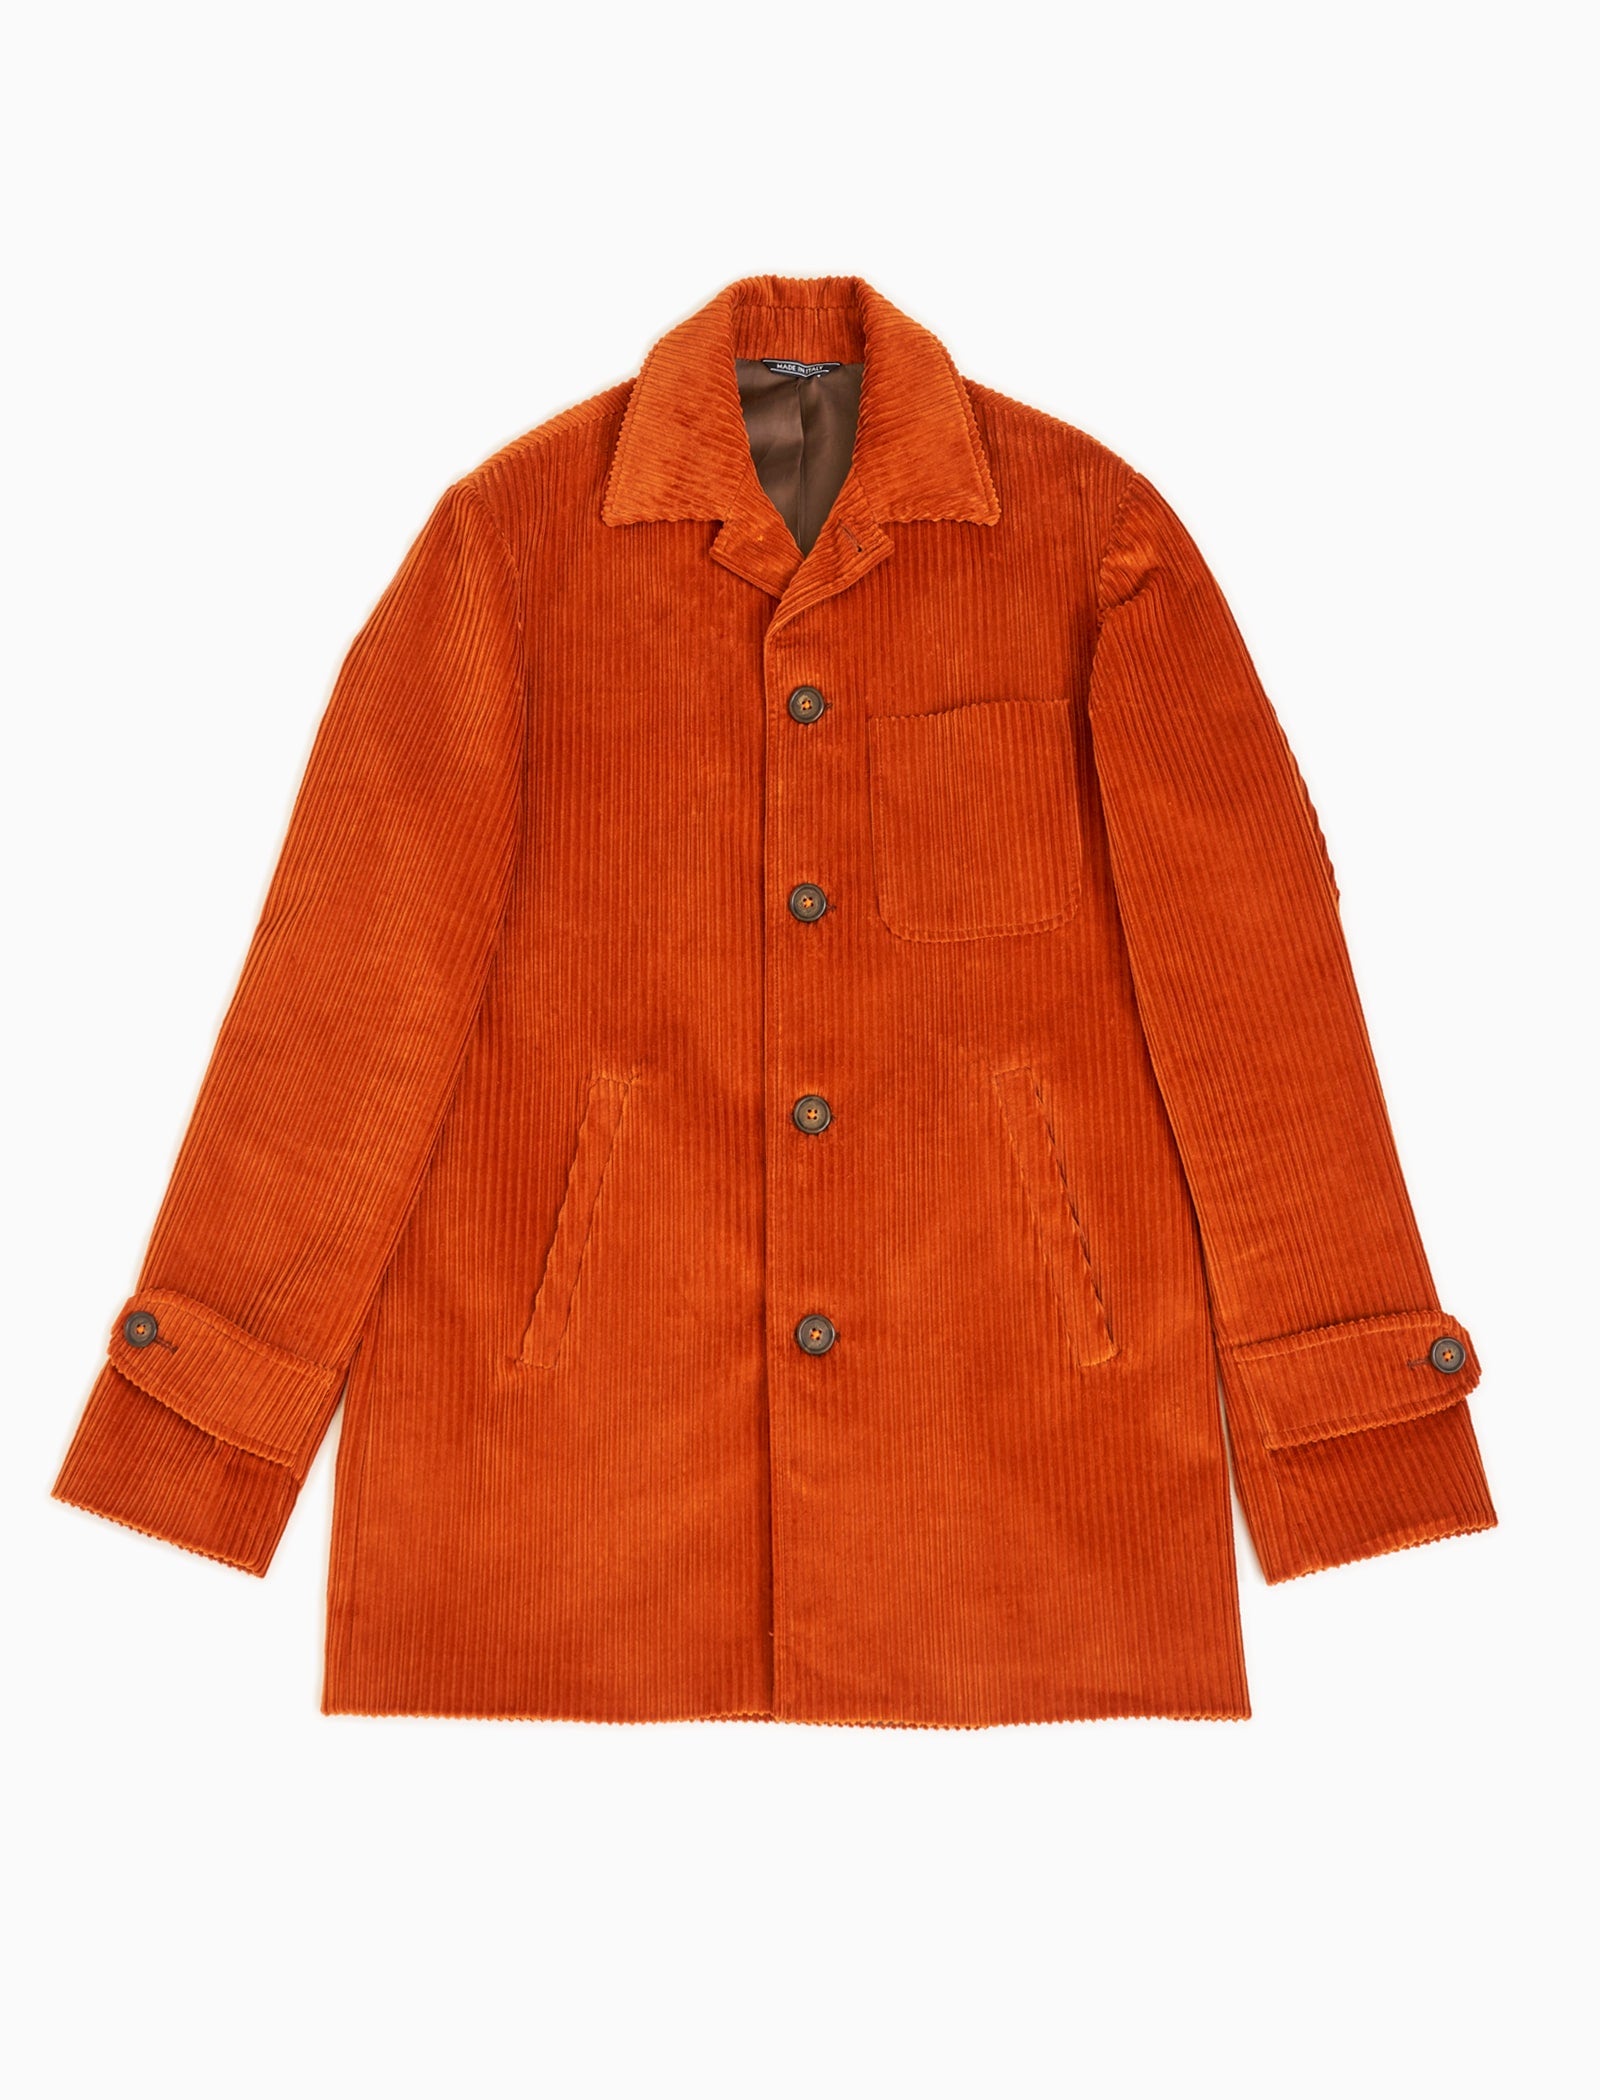 Orange 4 Wale Corduroy Overcoat